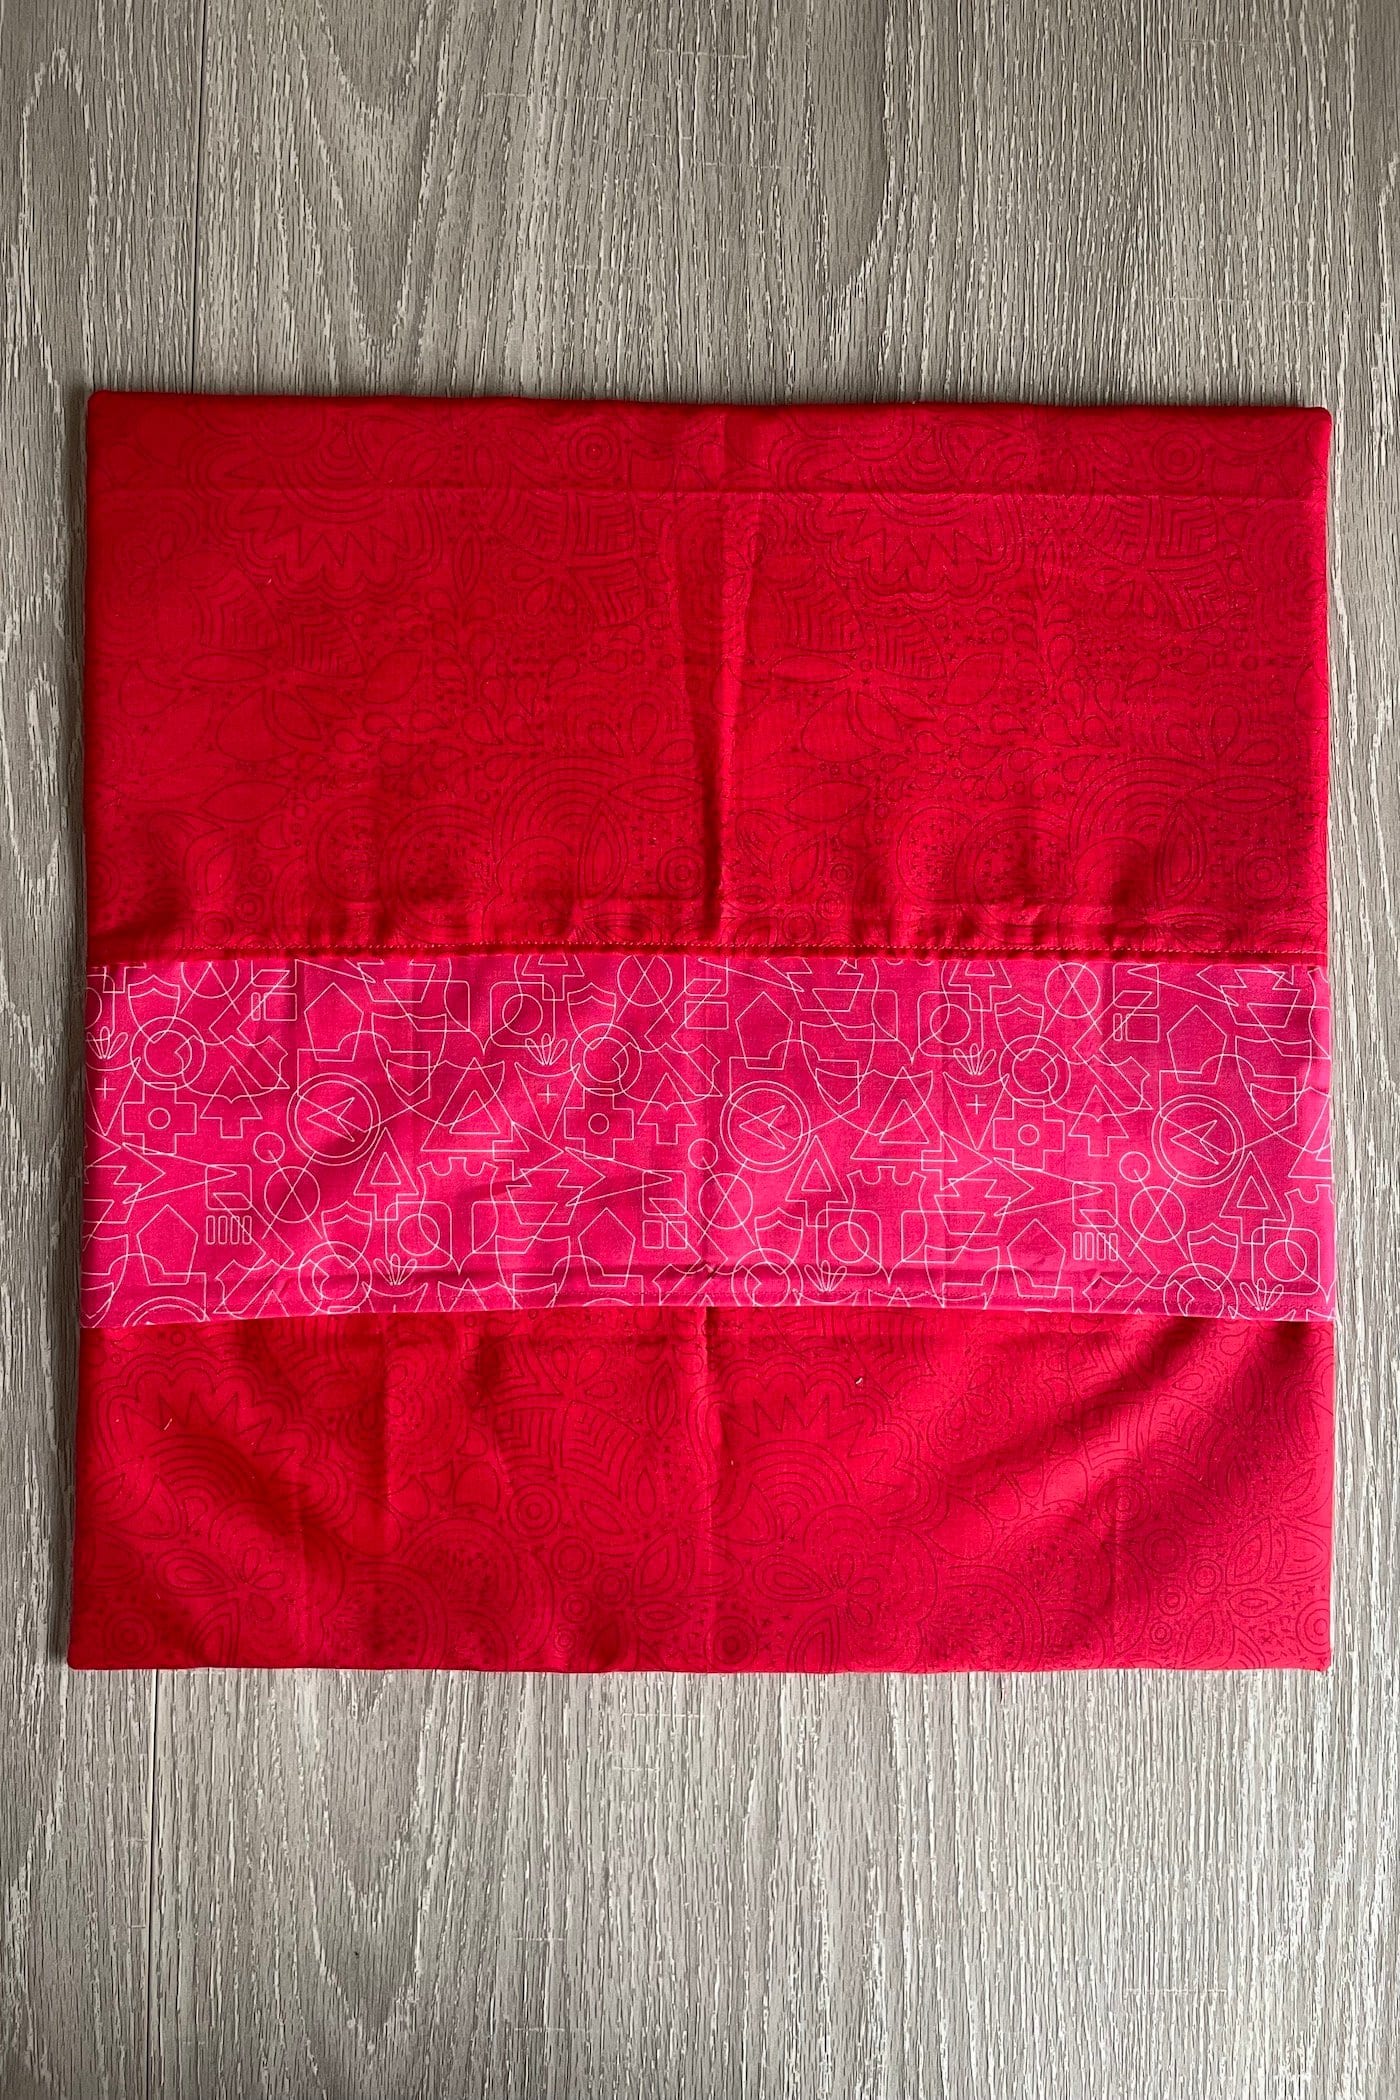 Taie d'oreiller en tissu rouge sur table en bois